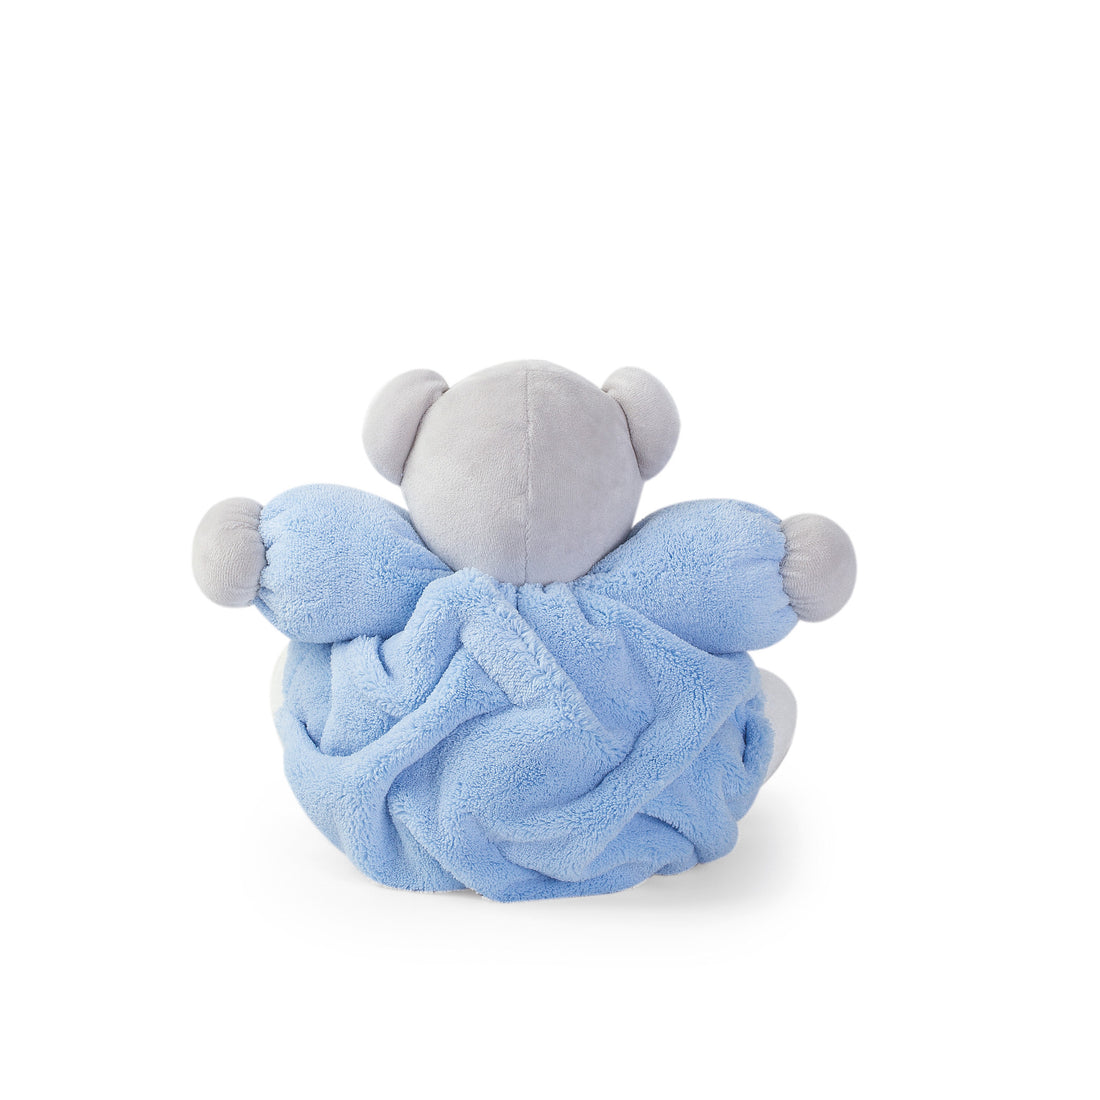 kaloo-plume-medium-blue-chubby-bear- (4)